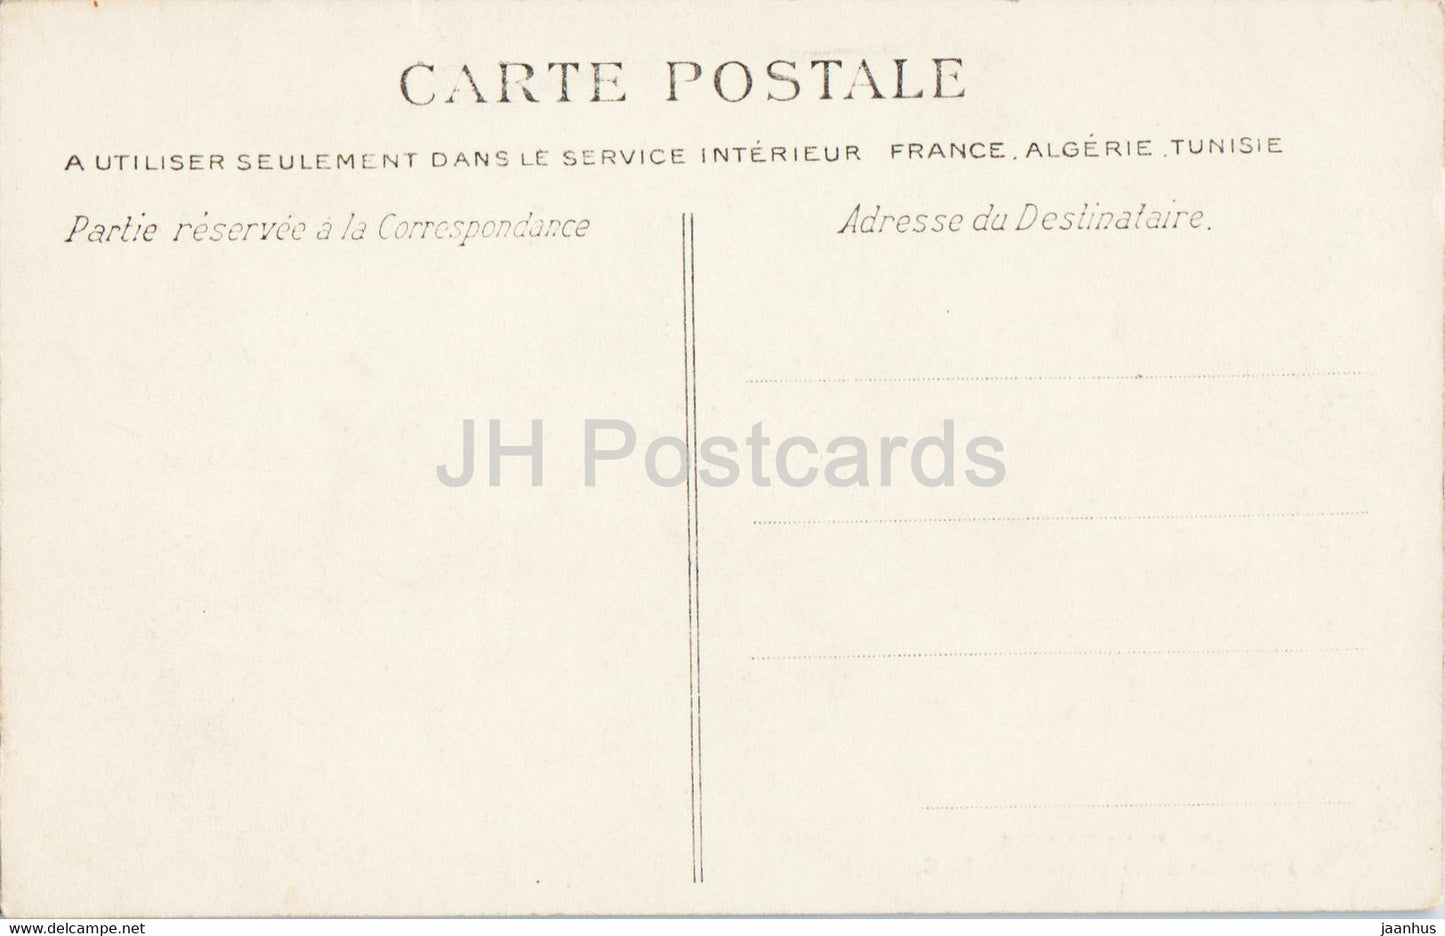 Villennes - Interieur de la Grotte - cave - 19 - old postcard - France - unused